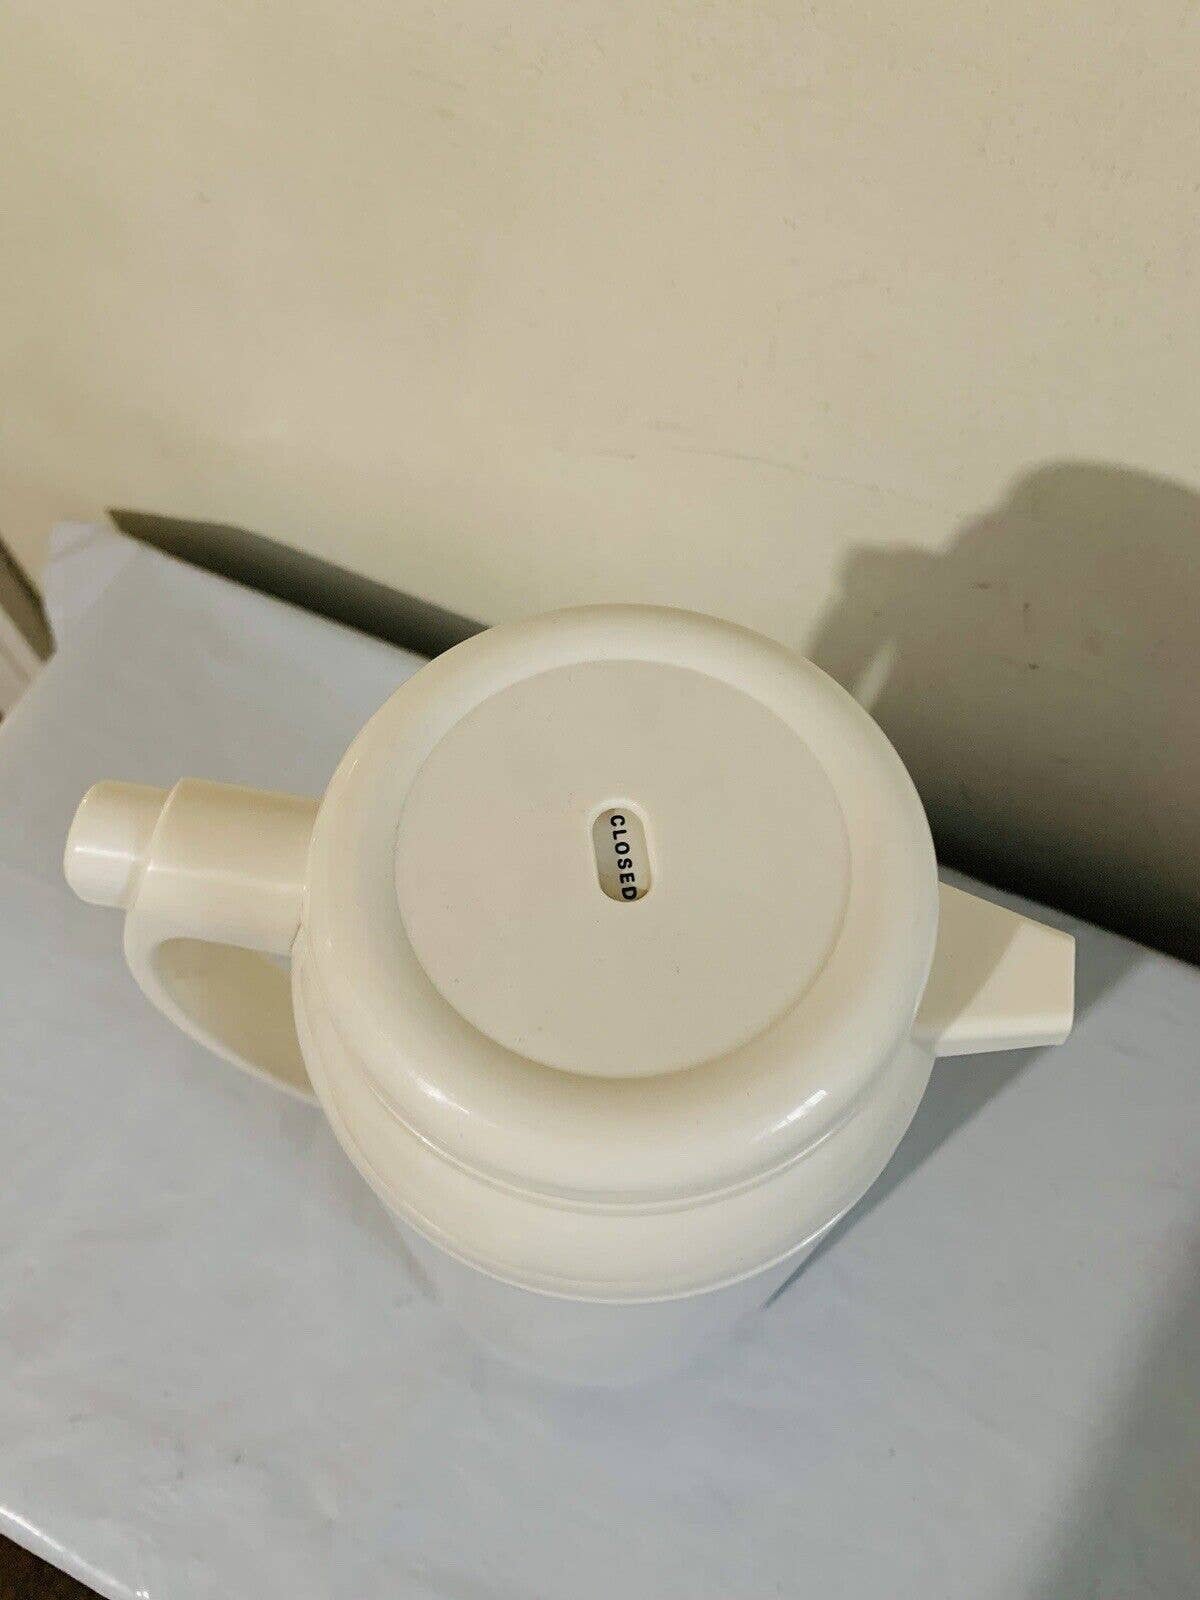 Zojirushi Premium Thermal Carafe 1.0 Liter White Made in Japan Tested 